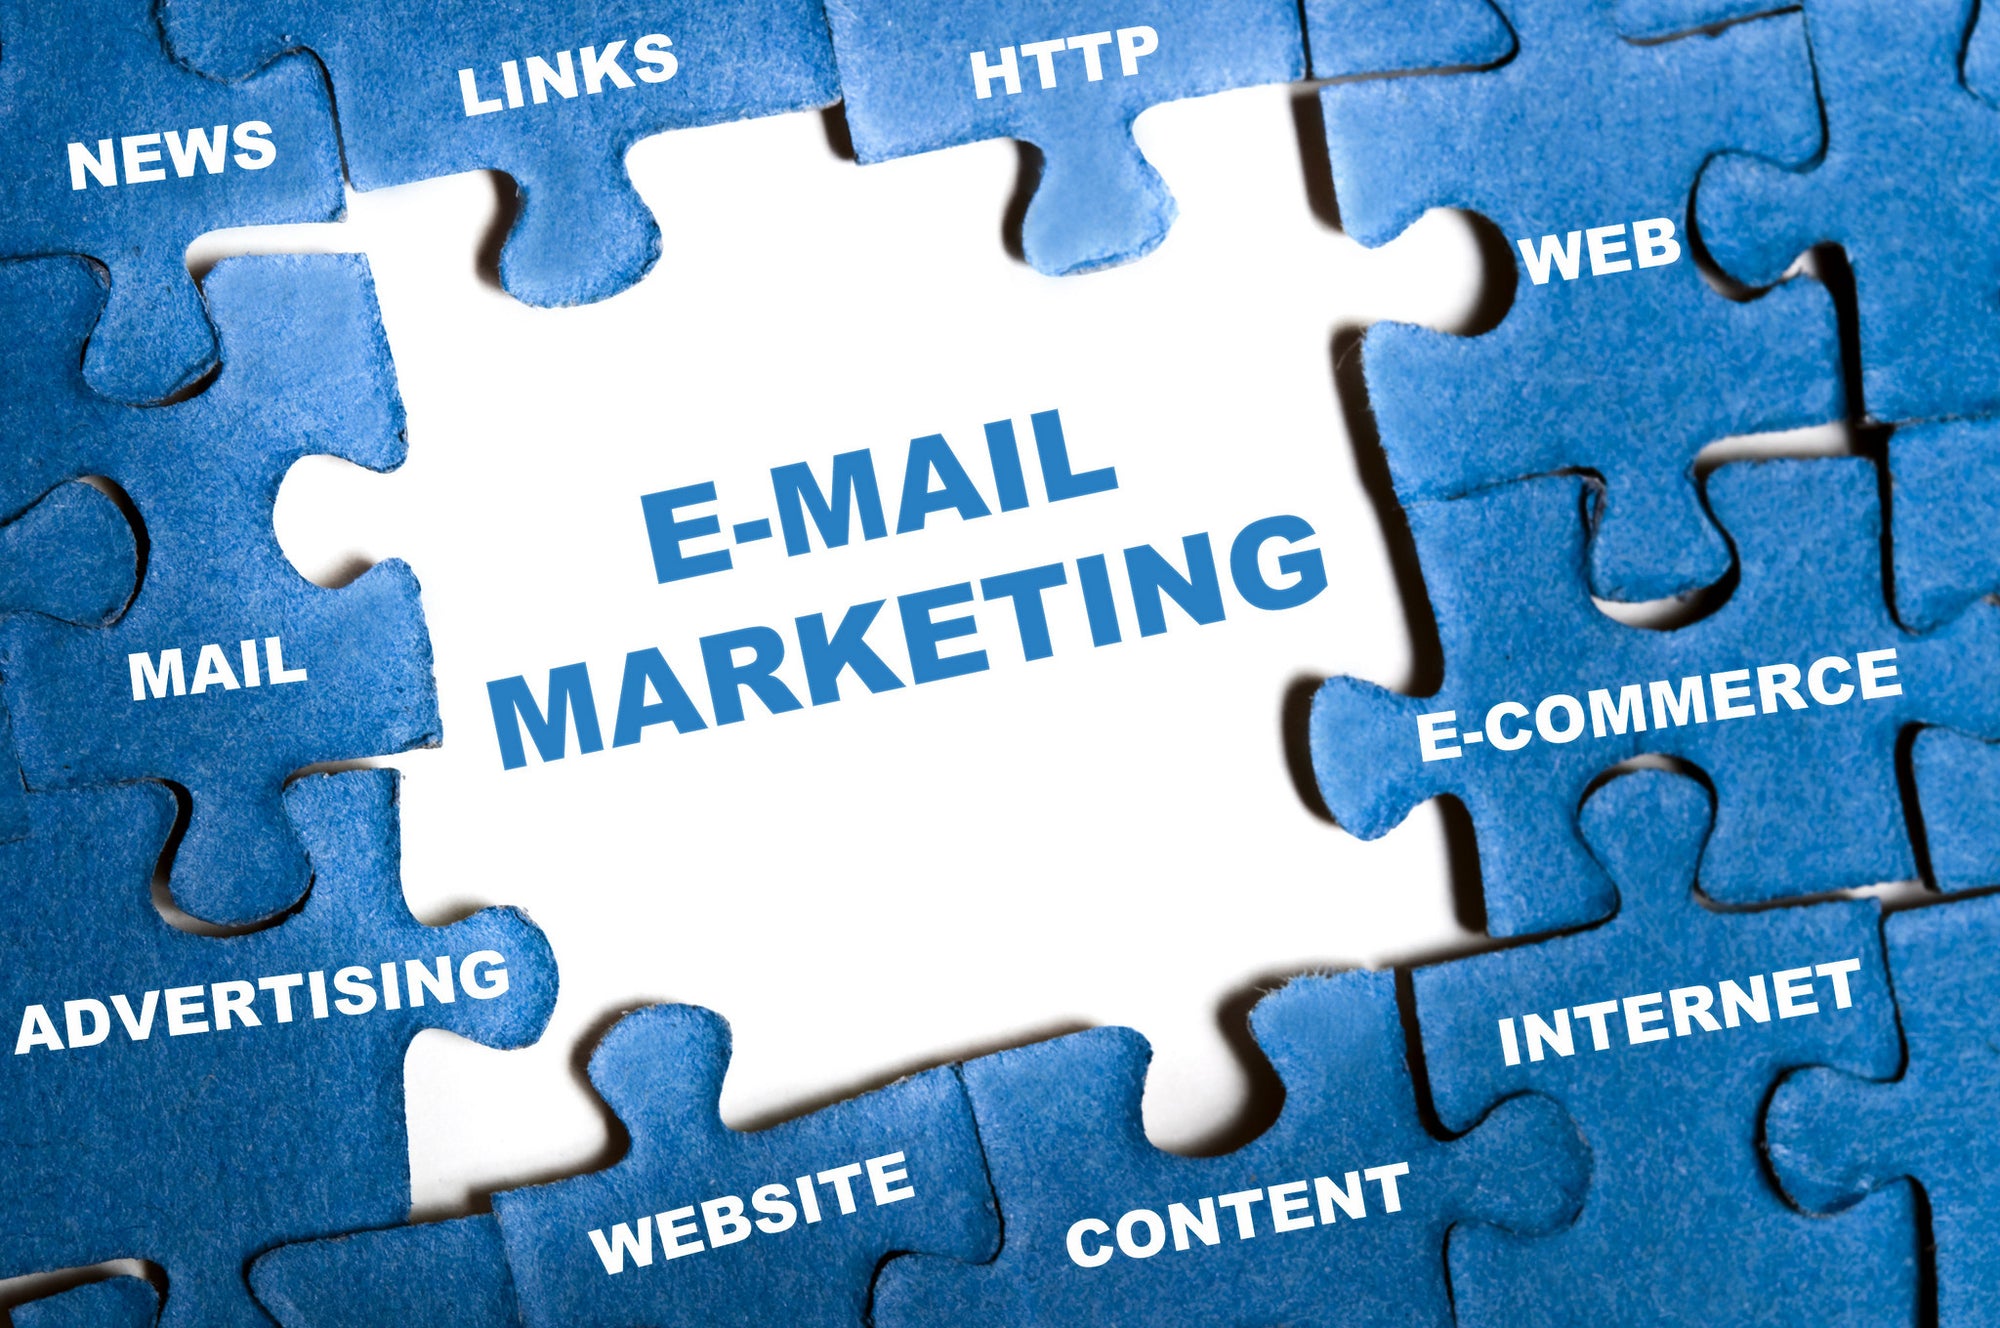 Email Marketing Setup